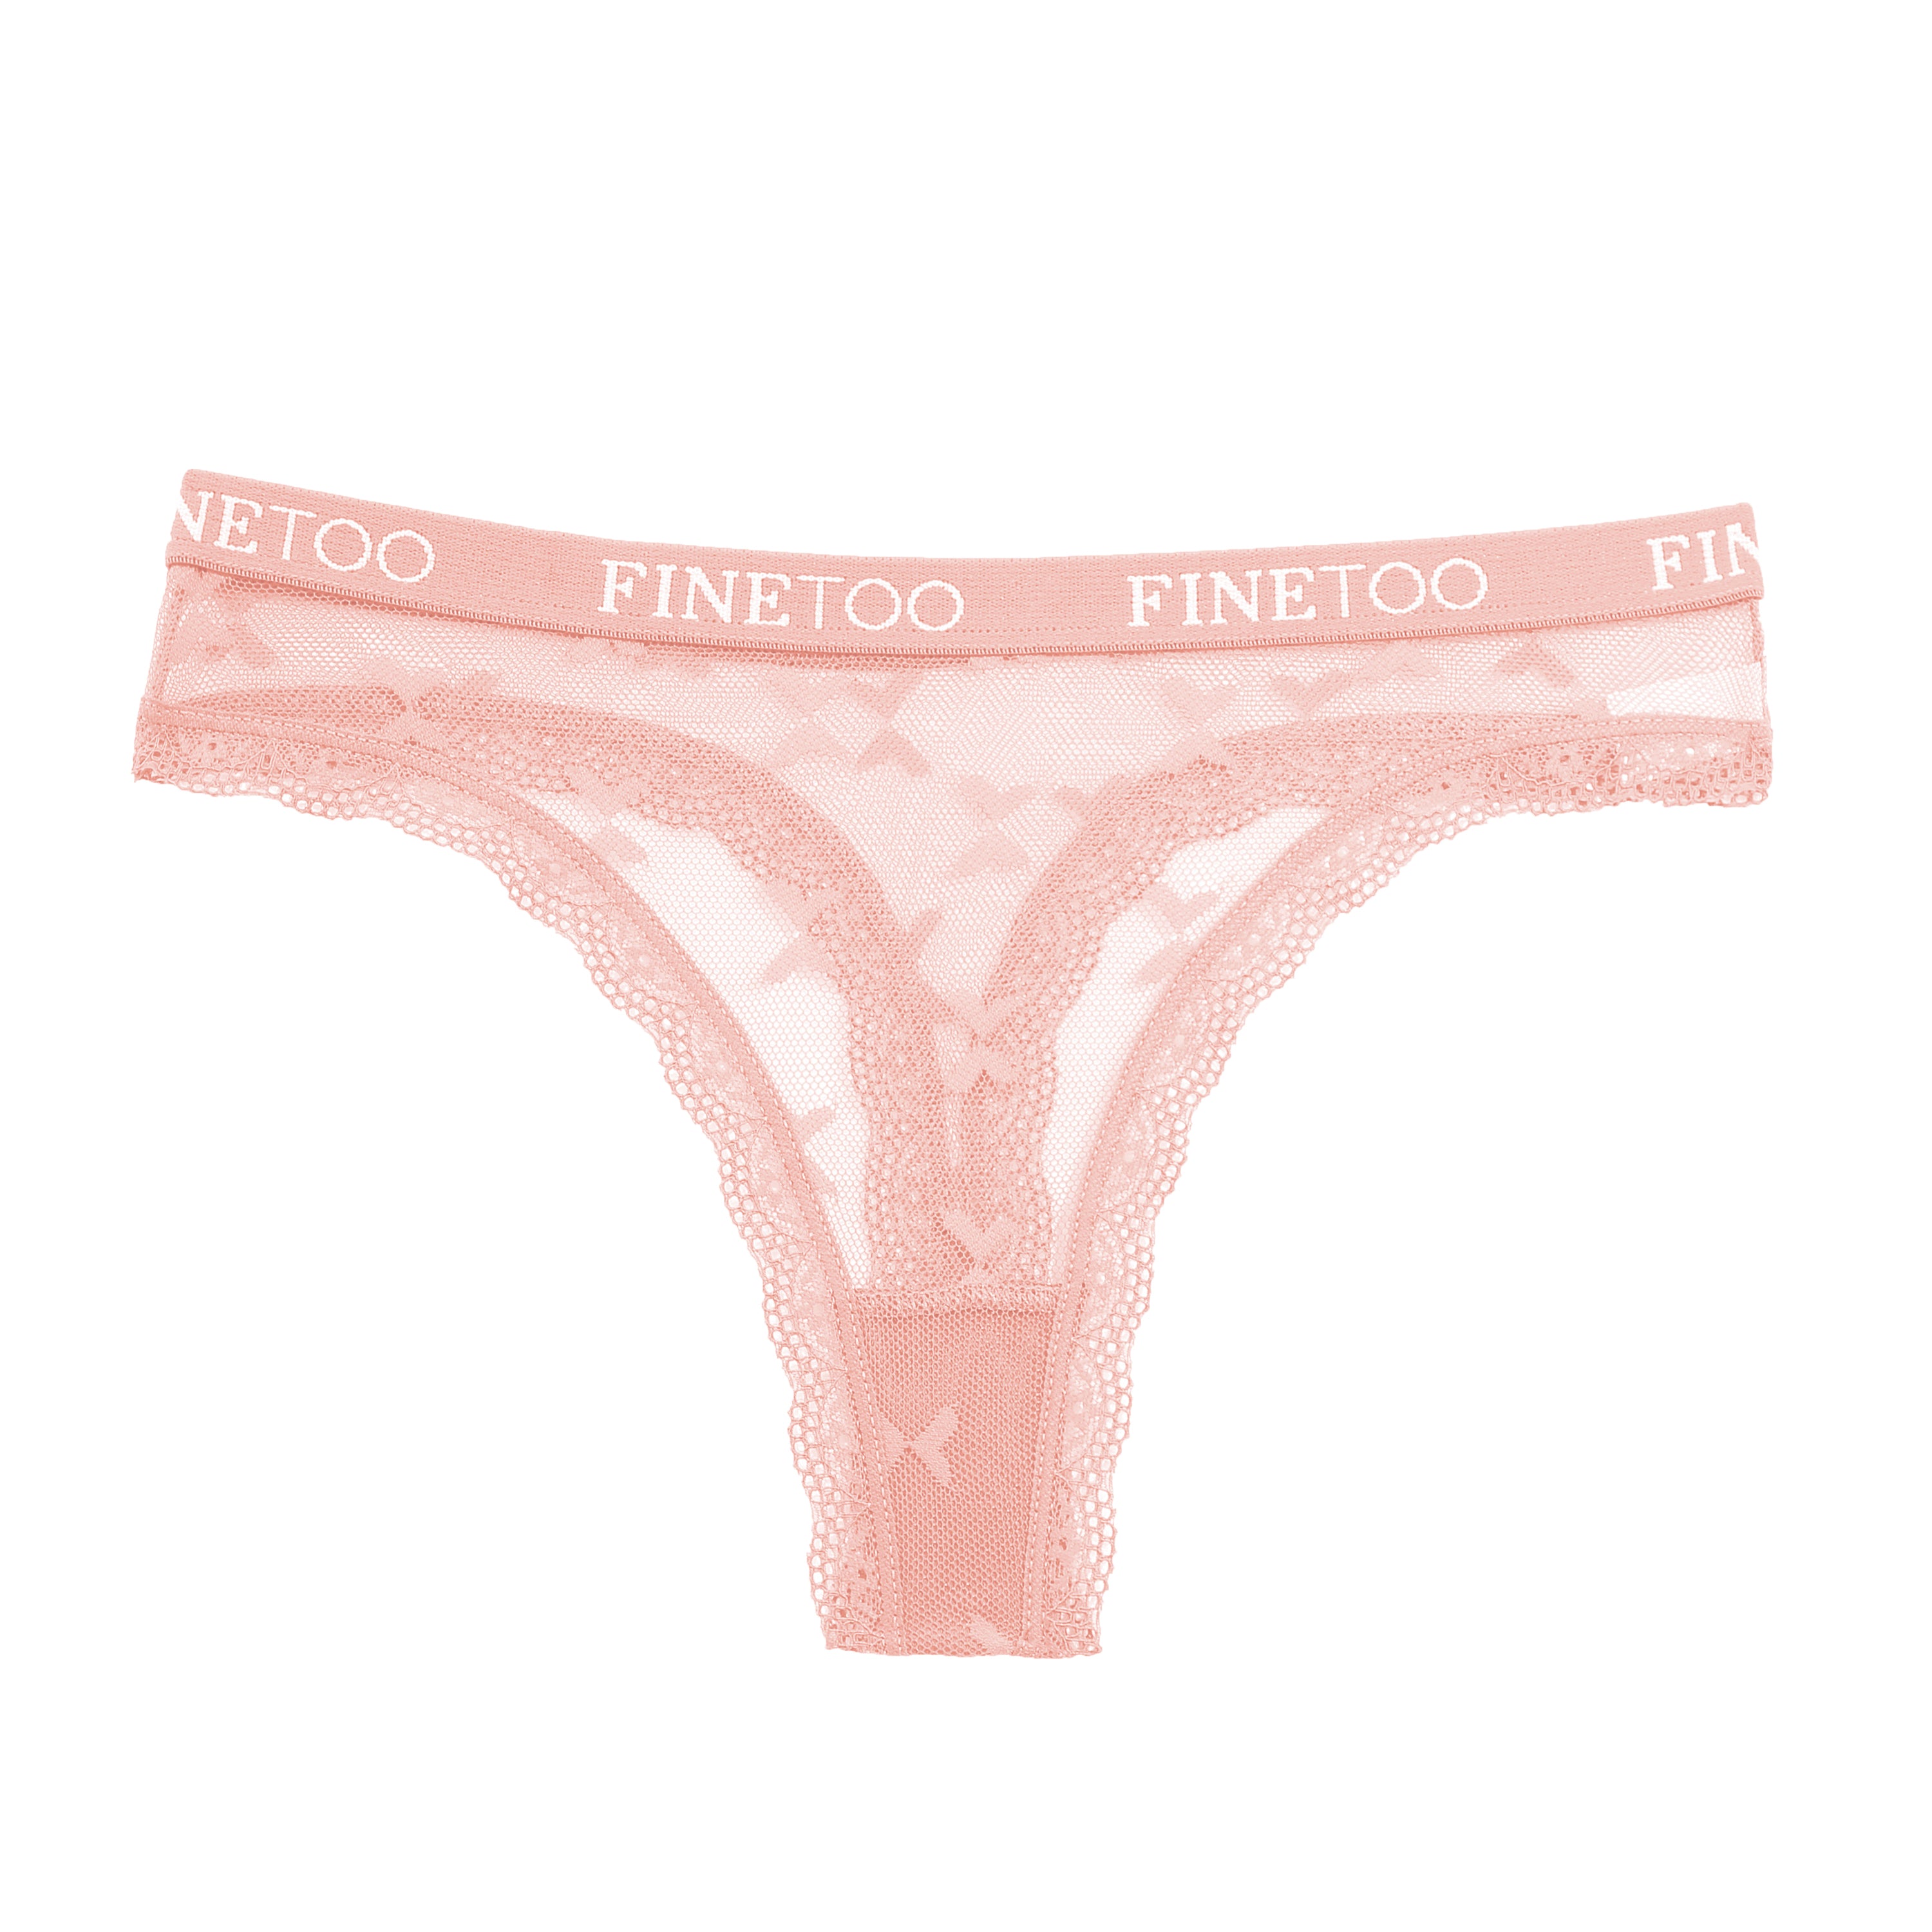 FINETOO 6 Pack Cotton Underwear for Women, Vietnam